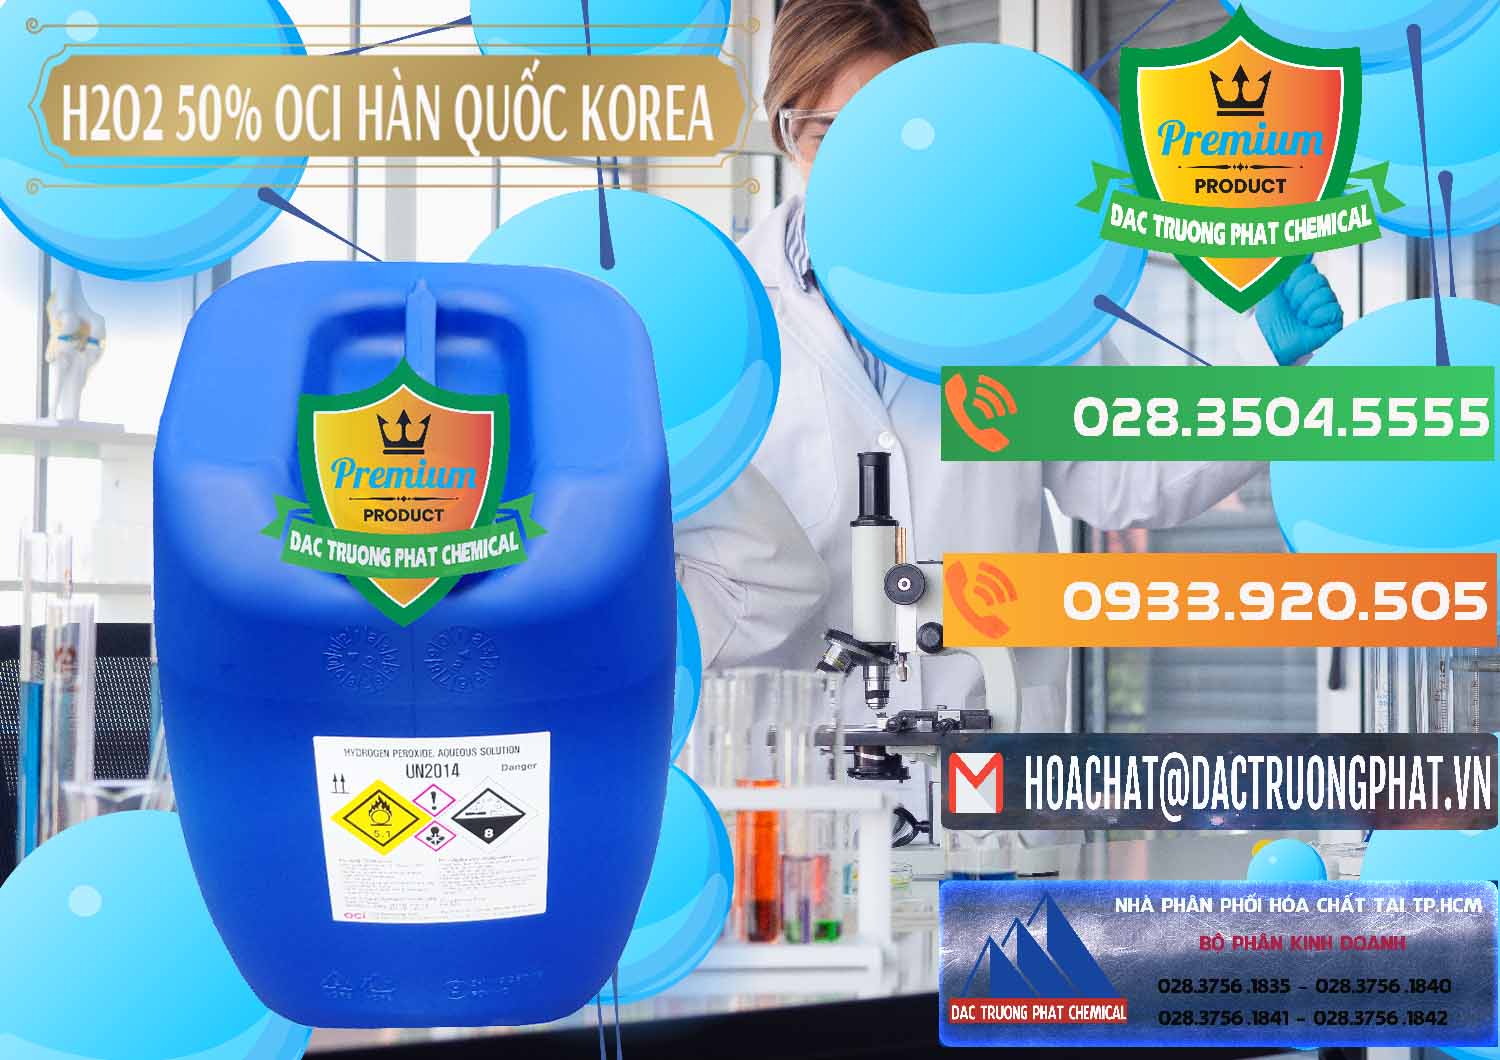 Nơi chuyên bán và phân phối H2O2 - Hydrogen Peroxide 50% OCI Hàn Quốc Korea - 0075 - Chuyên nhập khẩu và phân phối hóa chất tại TP.HCM - hoachatxulynuoc.com.vn